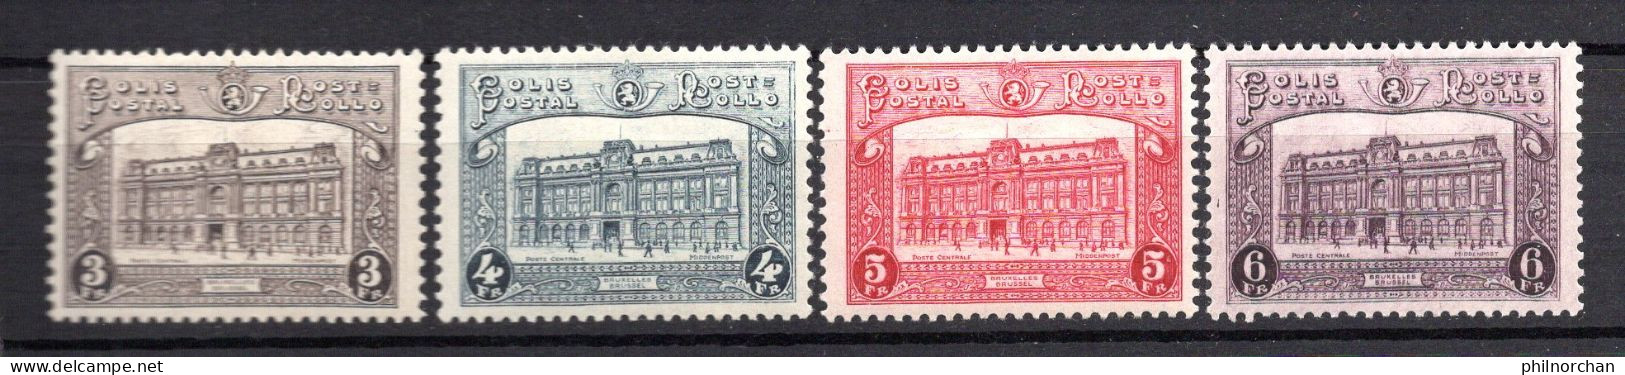 Belgique 1929 Colis Postaux Neufs*  N°170,171,172,173 Série Complète  5 €   (cote 37,50 €, 4 Valeurs) - Neufs